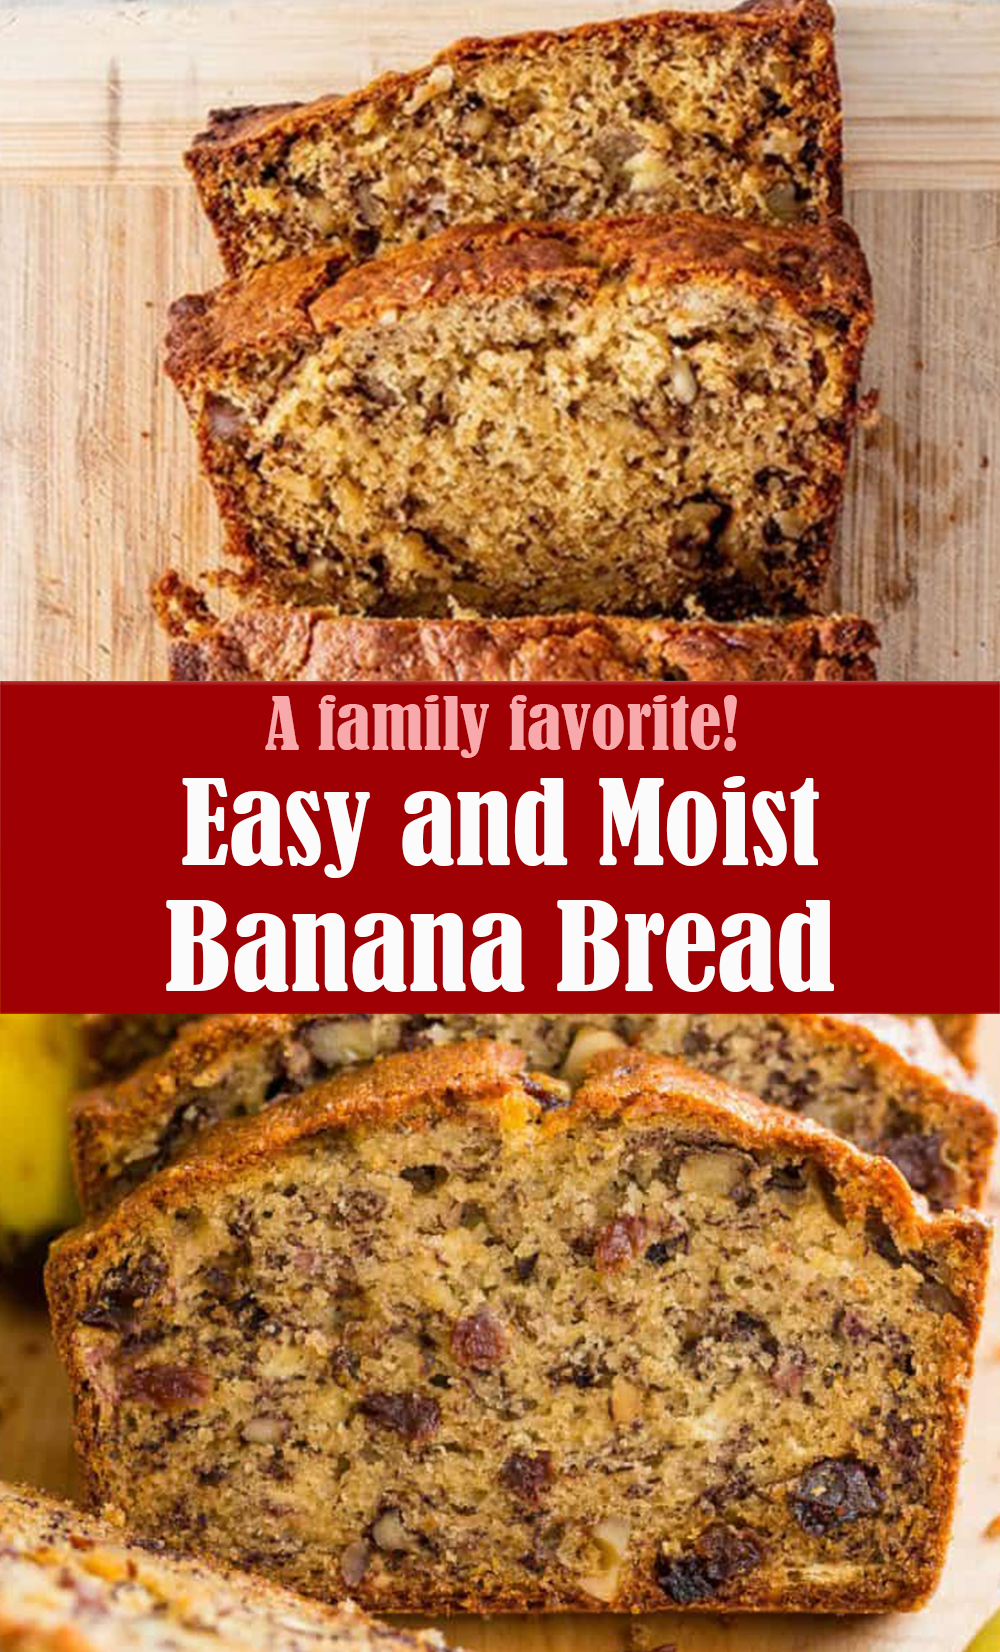 Easy and Moist Banana Bread Recipe